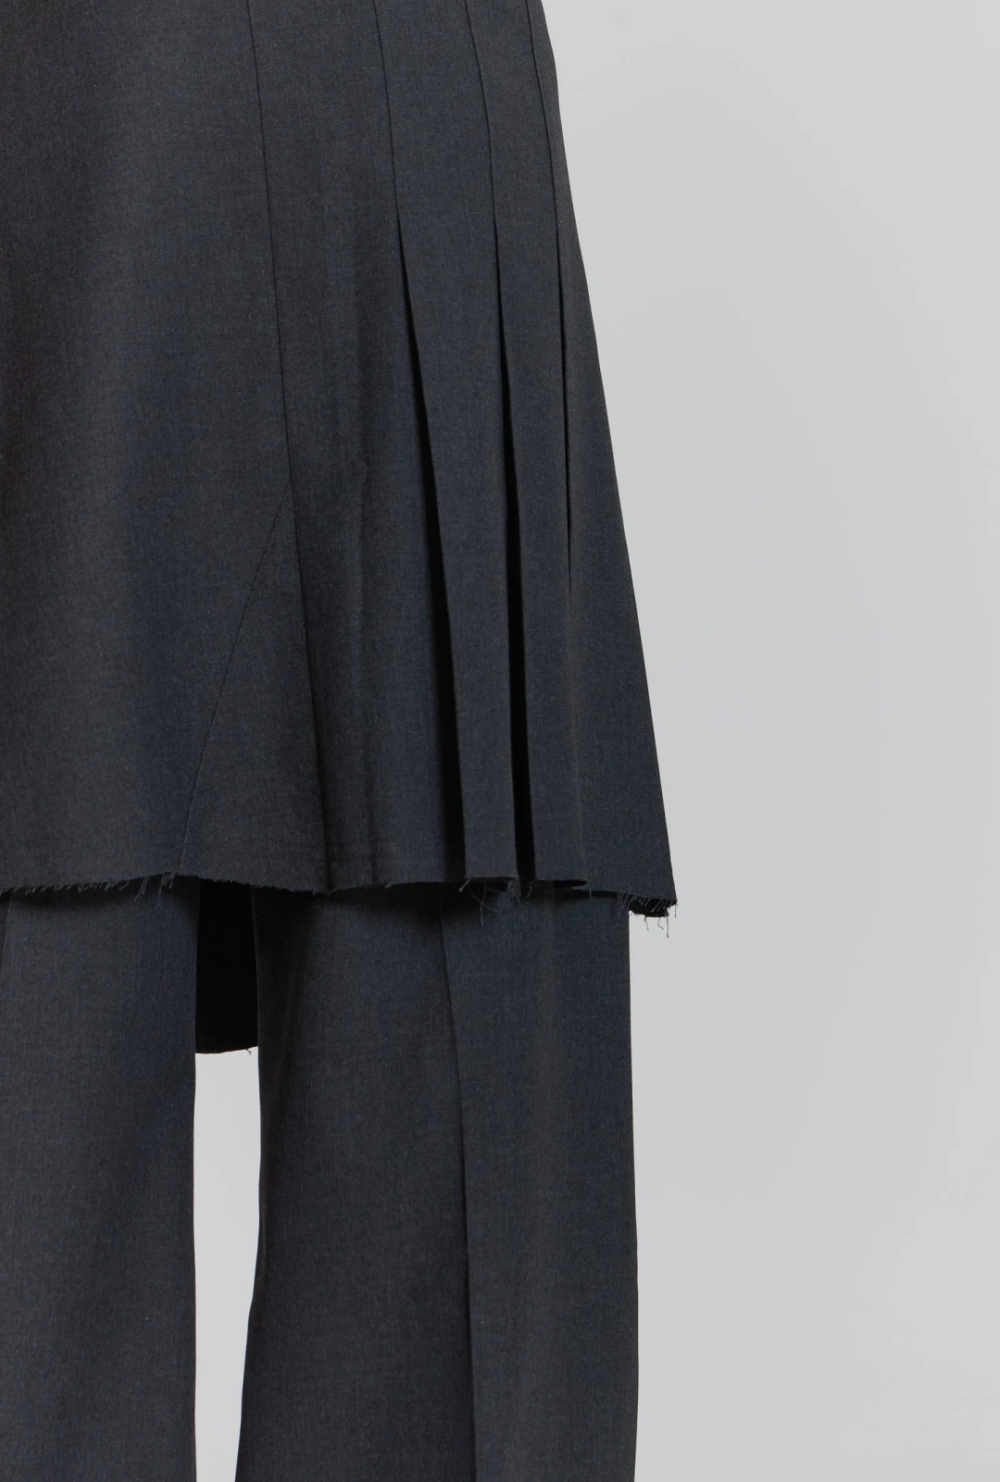 而这条百搭的灰色打褶裙片,整体风格相对简约,无论是搭配日系一点的